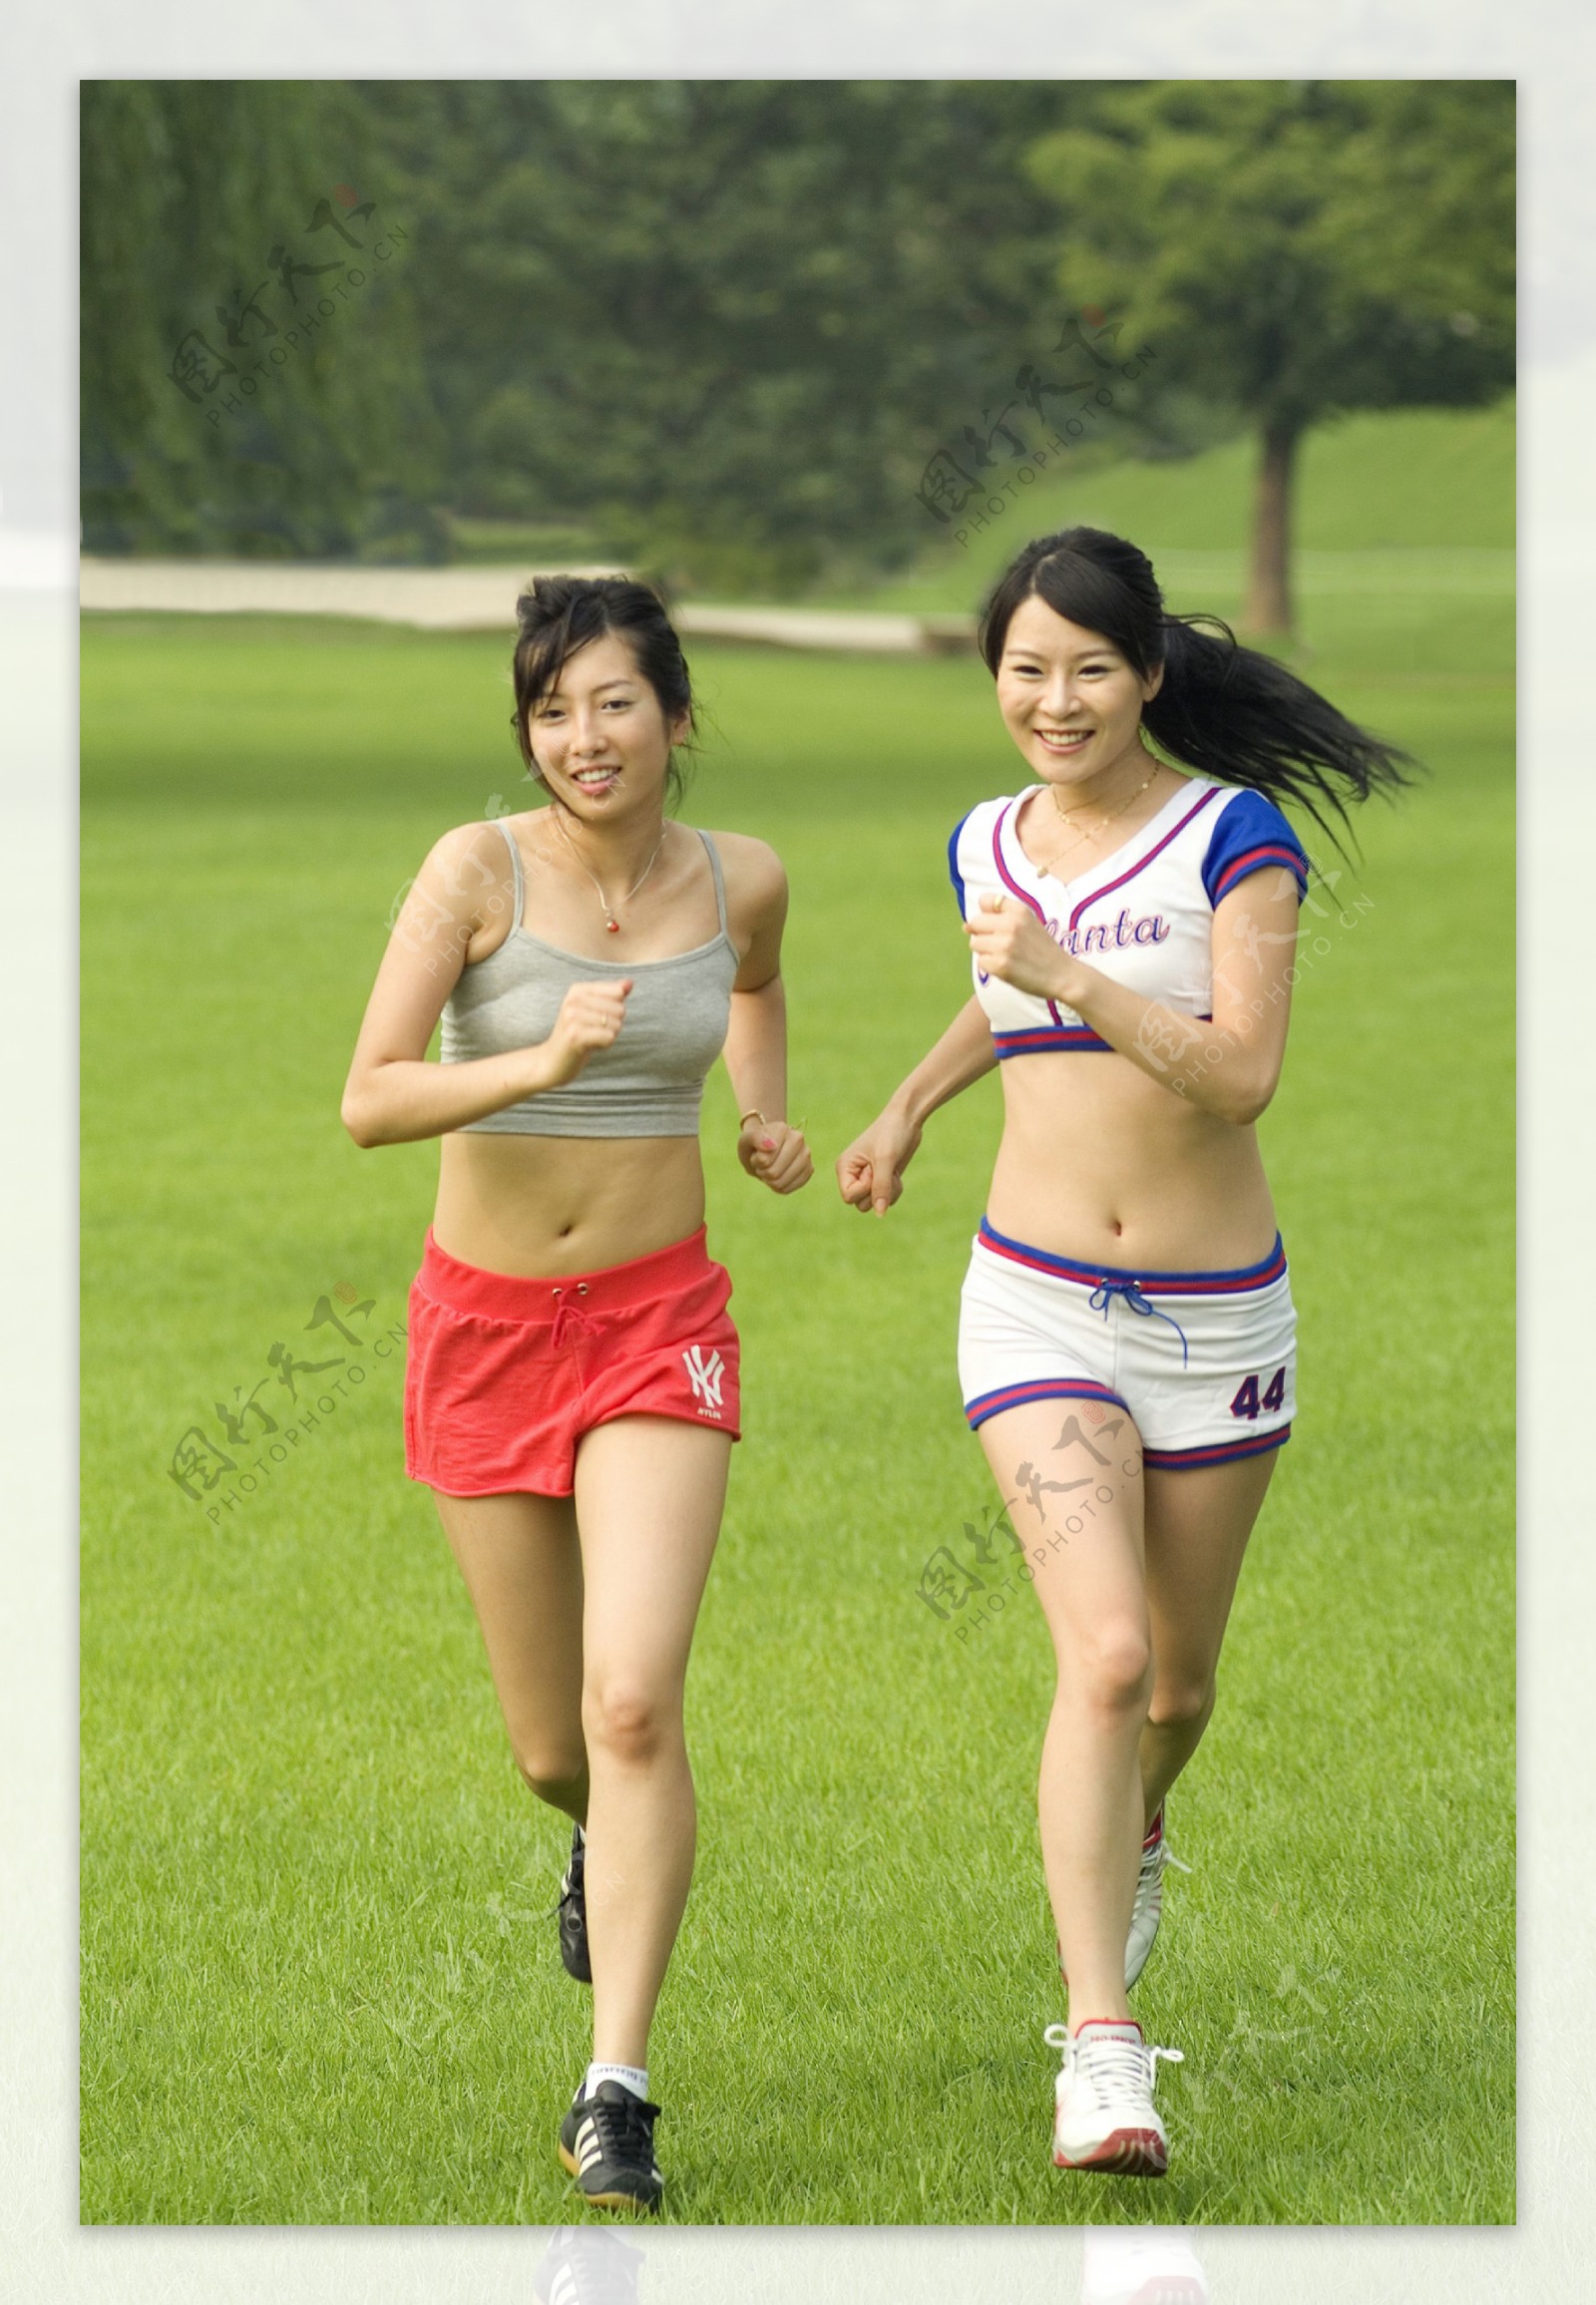 跑步的两个健身美女图片